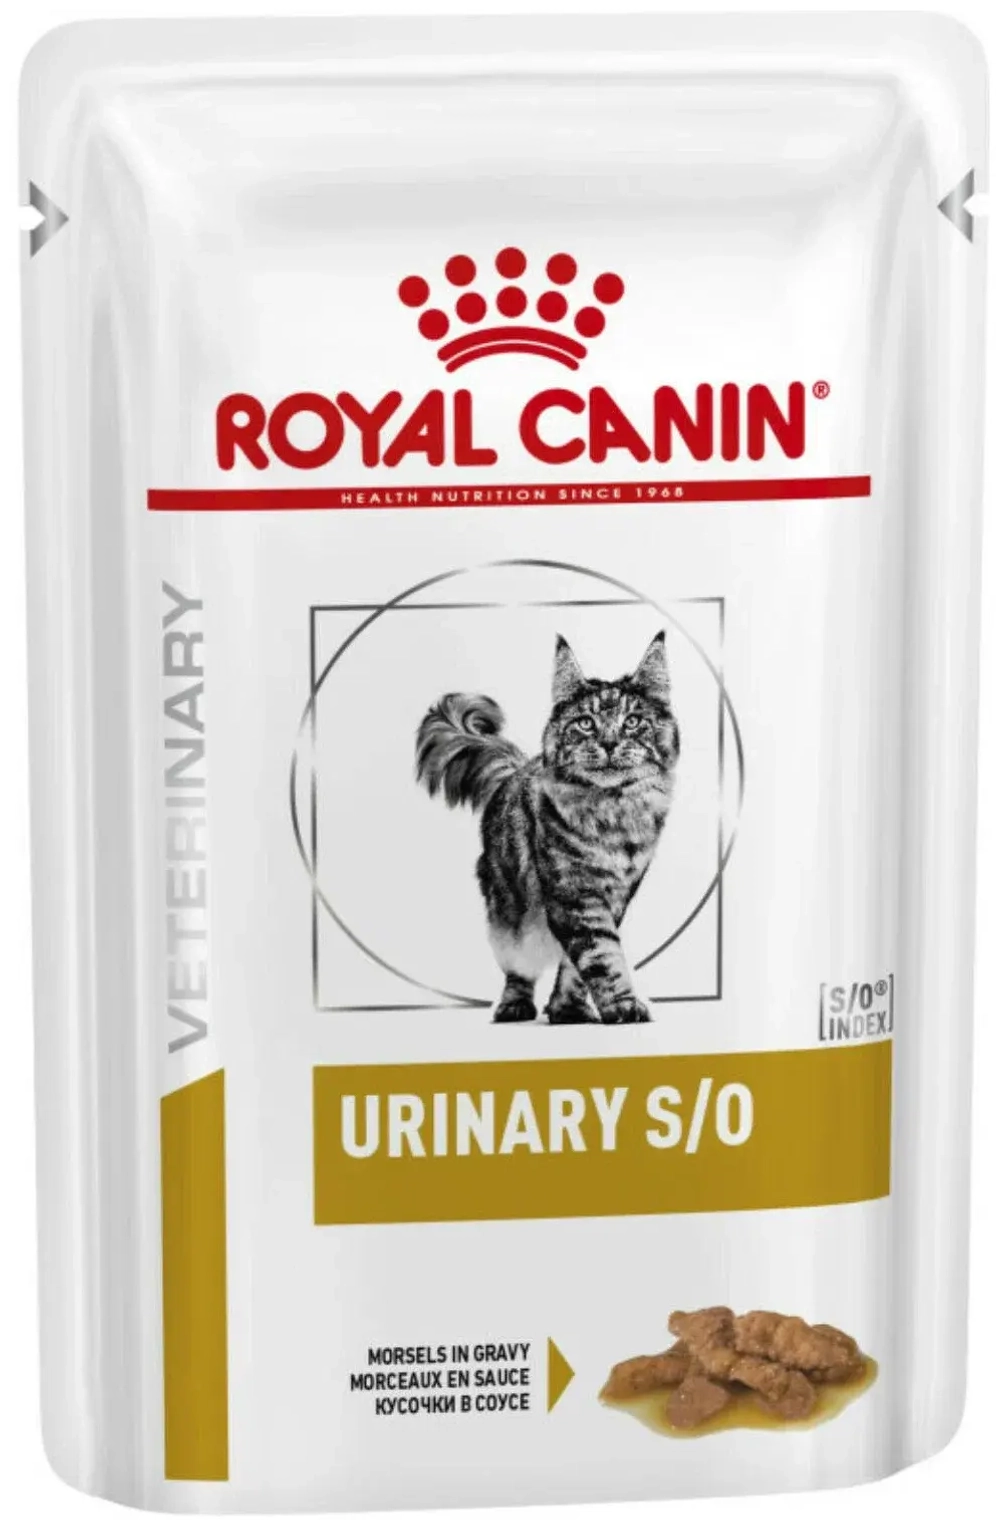 Ветеринарный корм Royal Canin Urinary S/O, для лечения МКБ (кусочки в соусе) 85 гр.